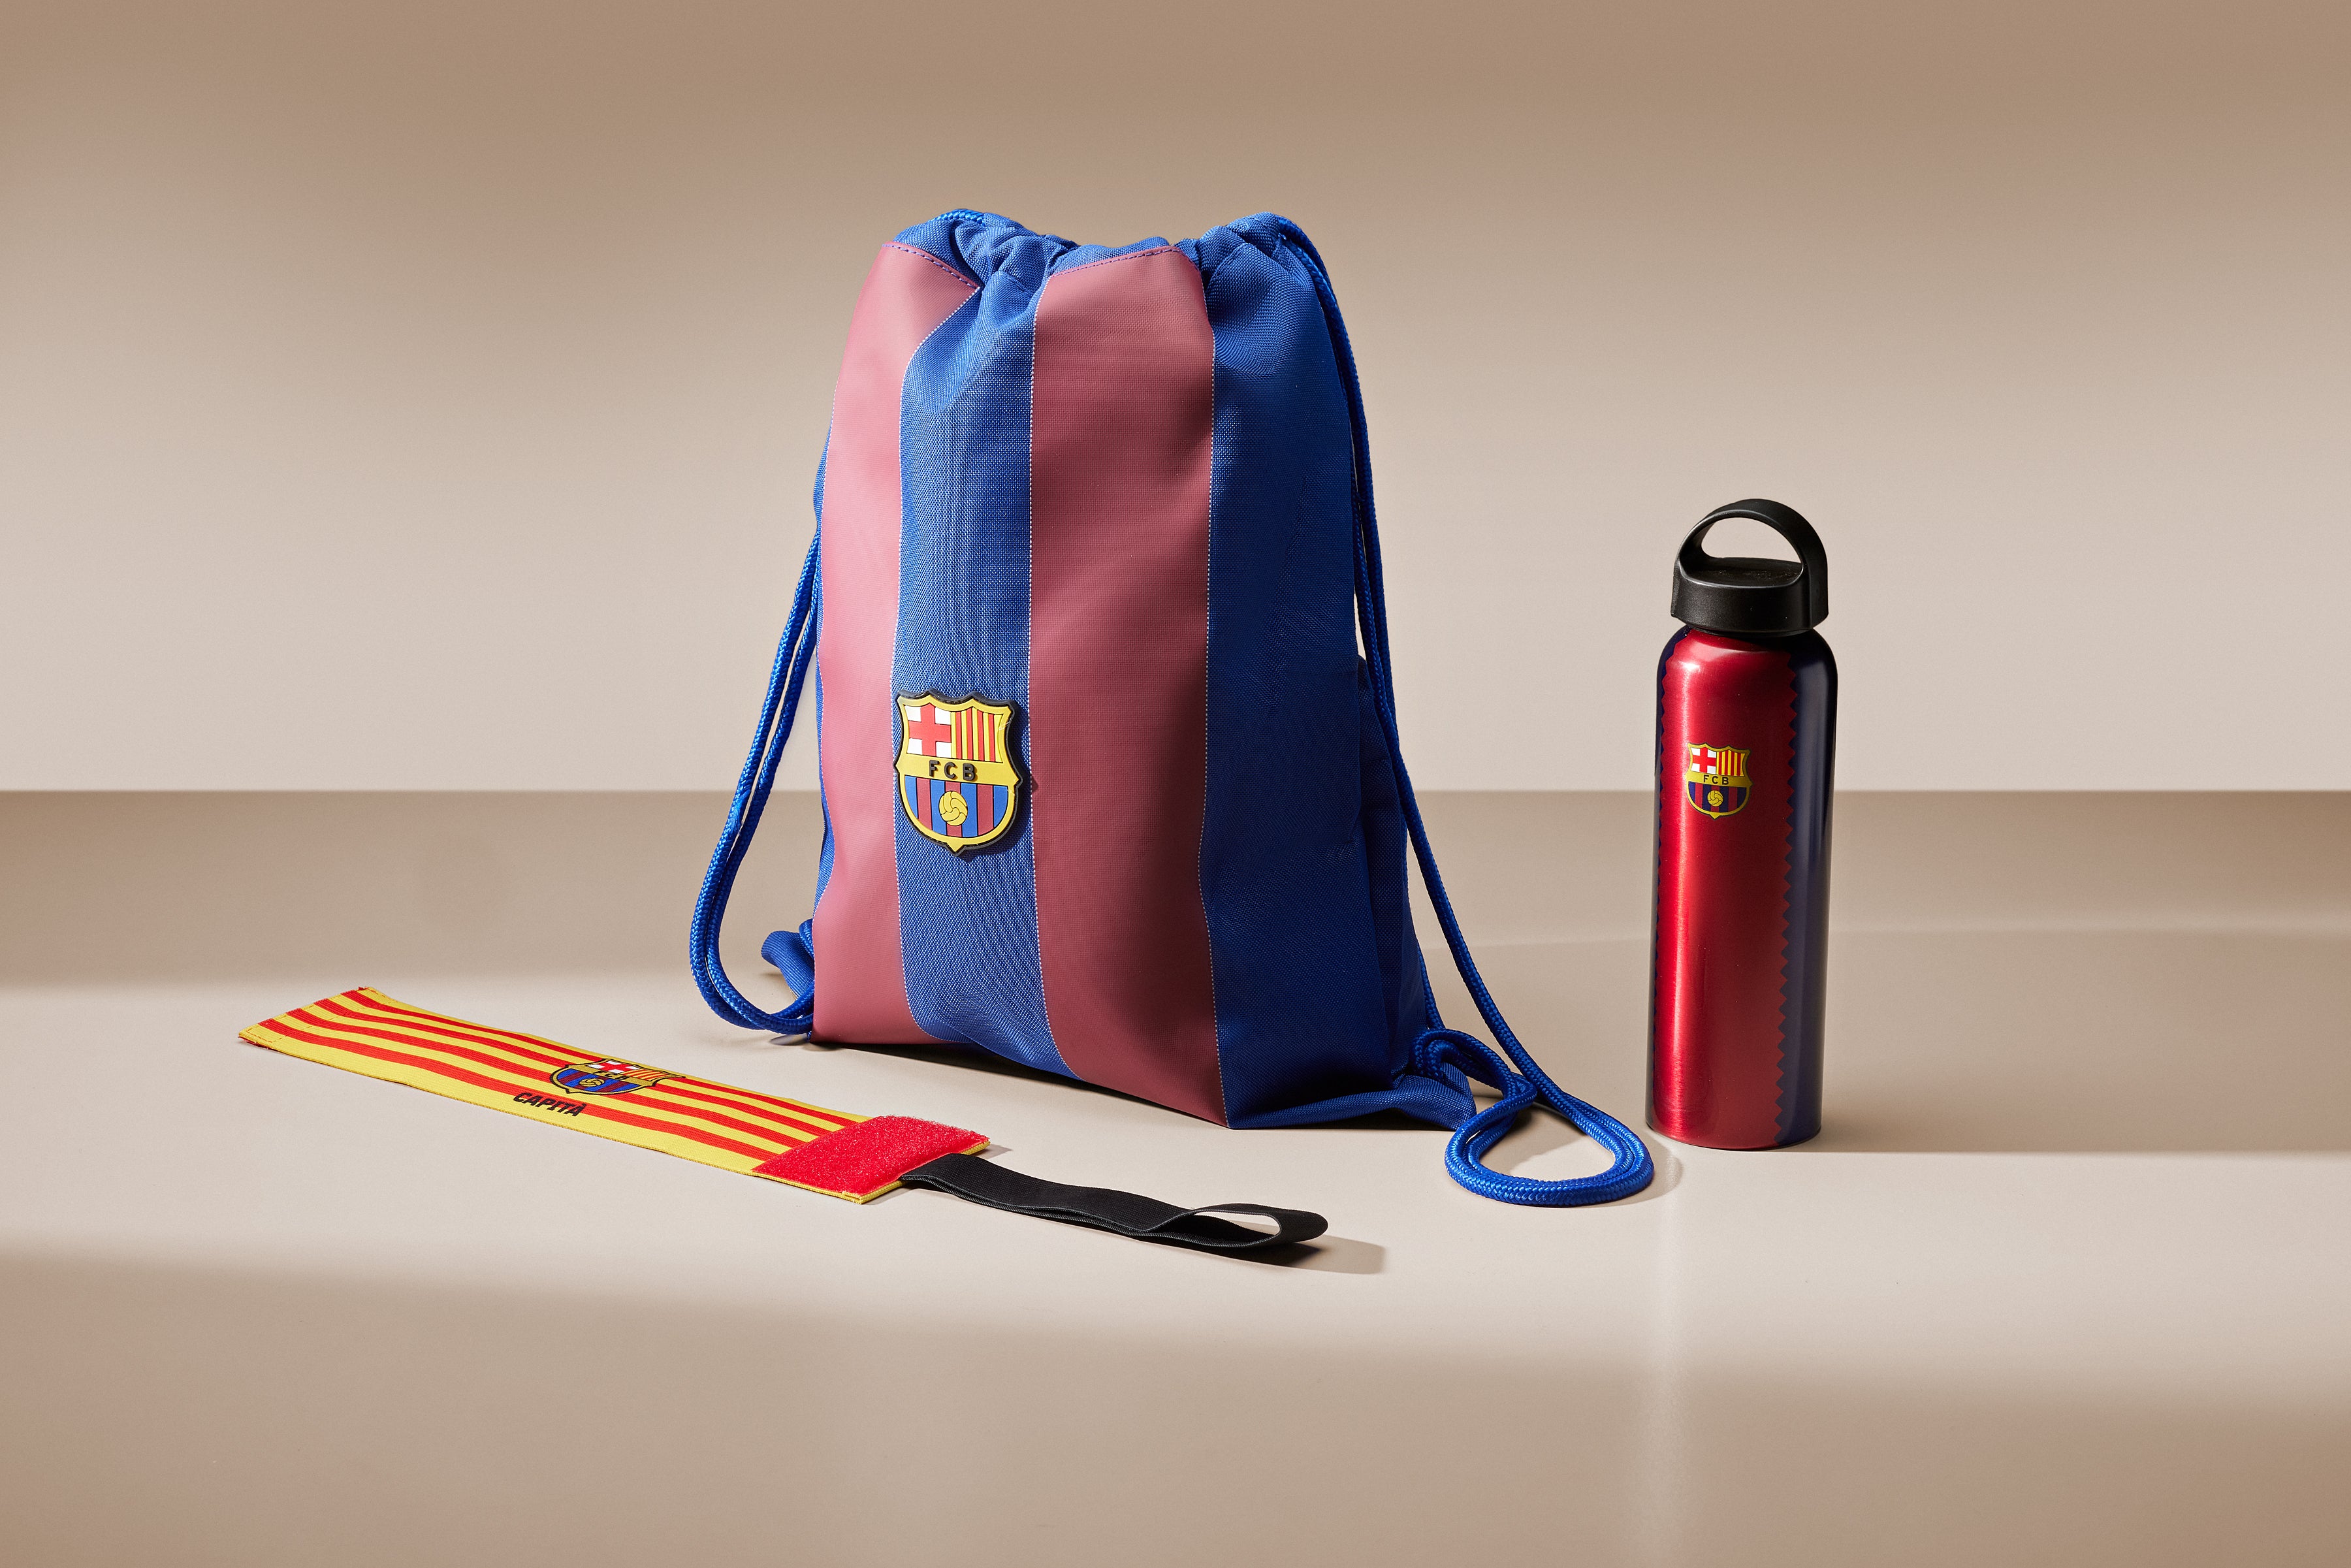 Bolsa de papel regalo de FC Barcelona - Regalos y regalitos